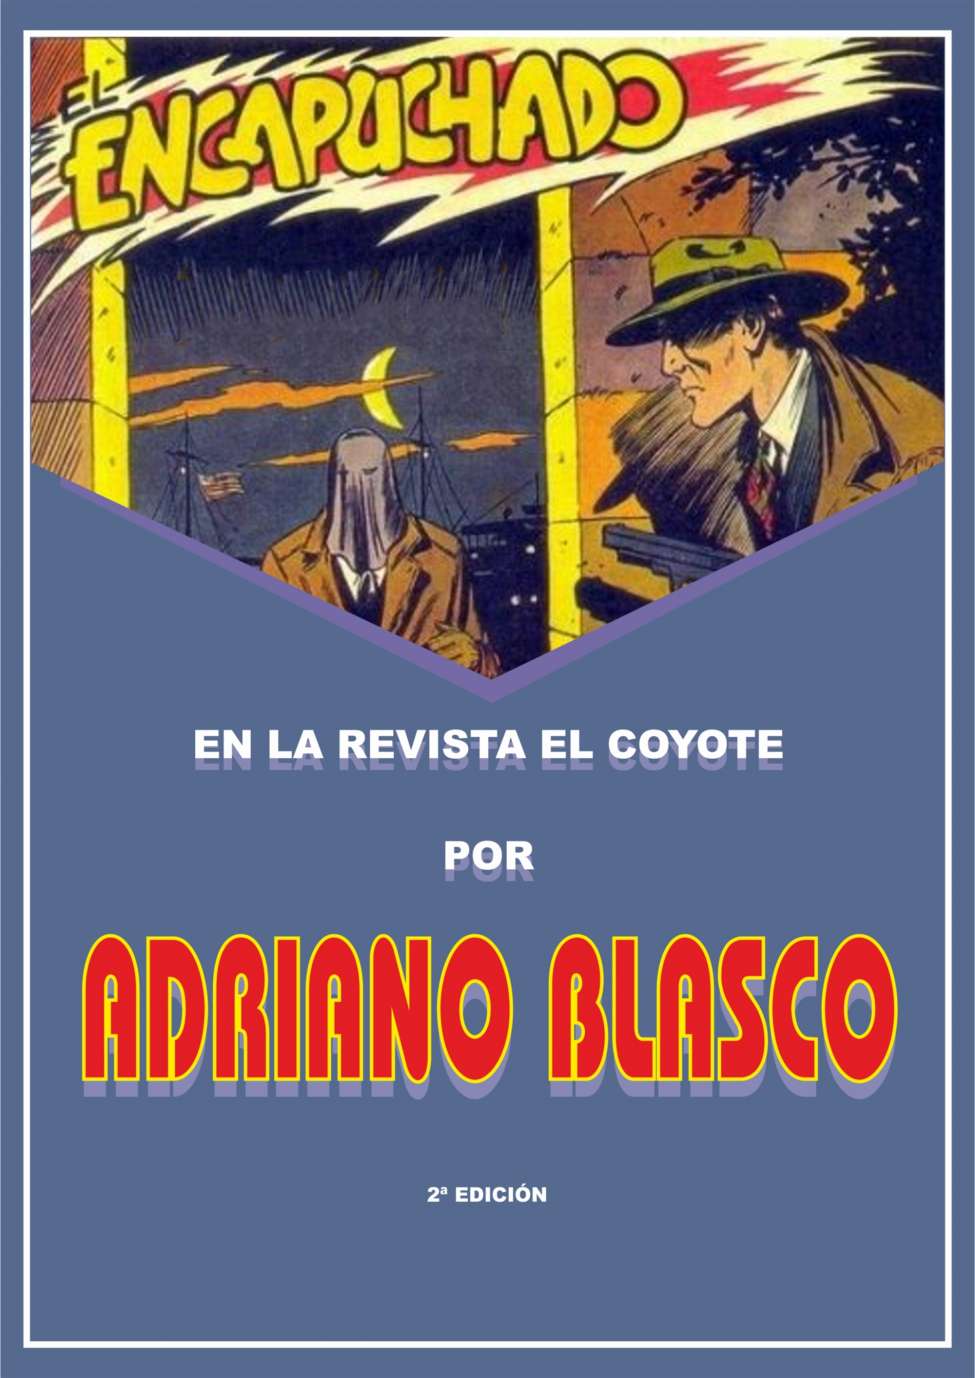 Book Cover For El Encapuchado en la revista El Coyote por Adriano Blasco 2d Ed